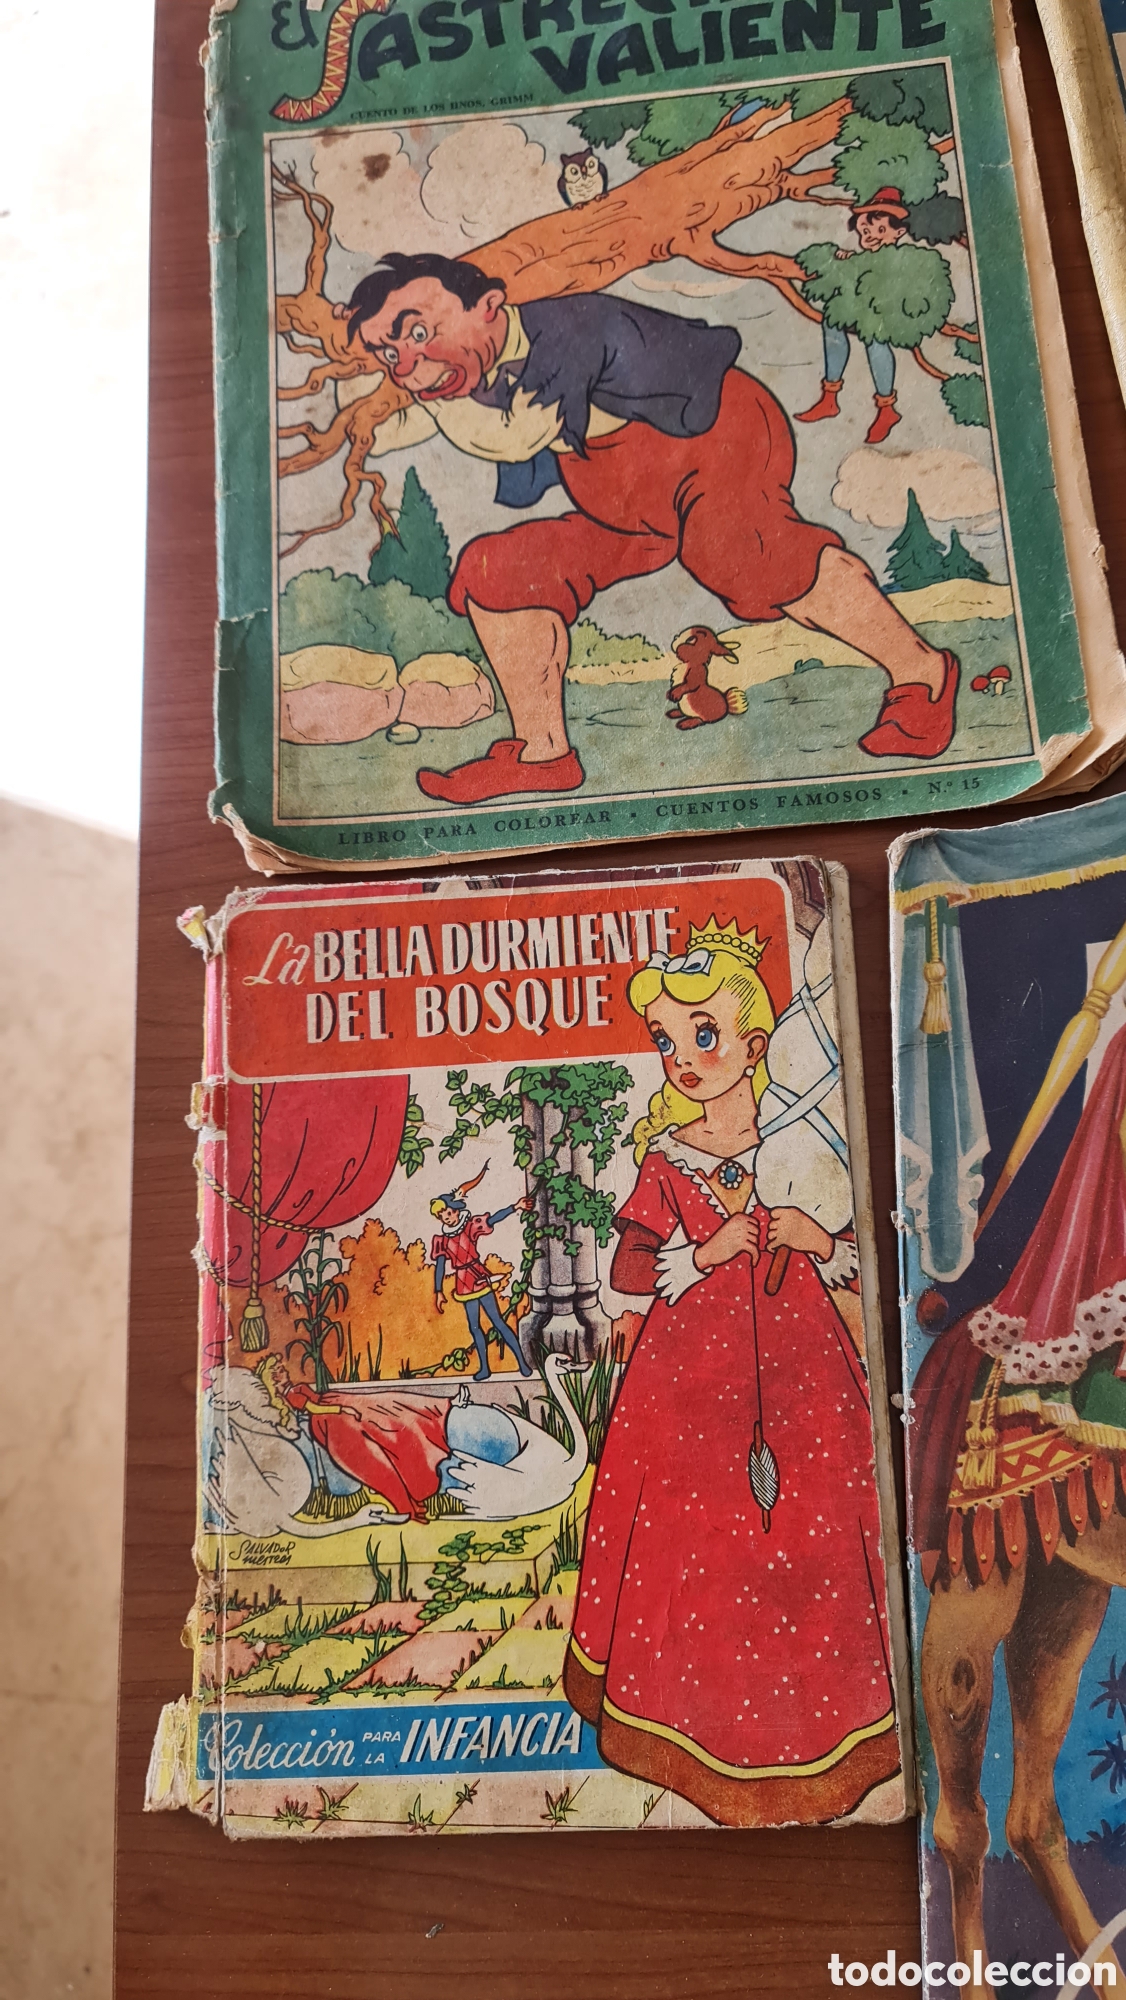 4152- lote de 5 cuentos infantiles en castellan - Compra venta en  todocoleccion